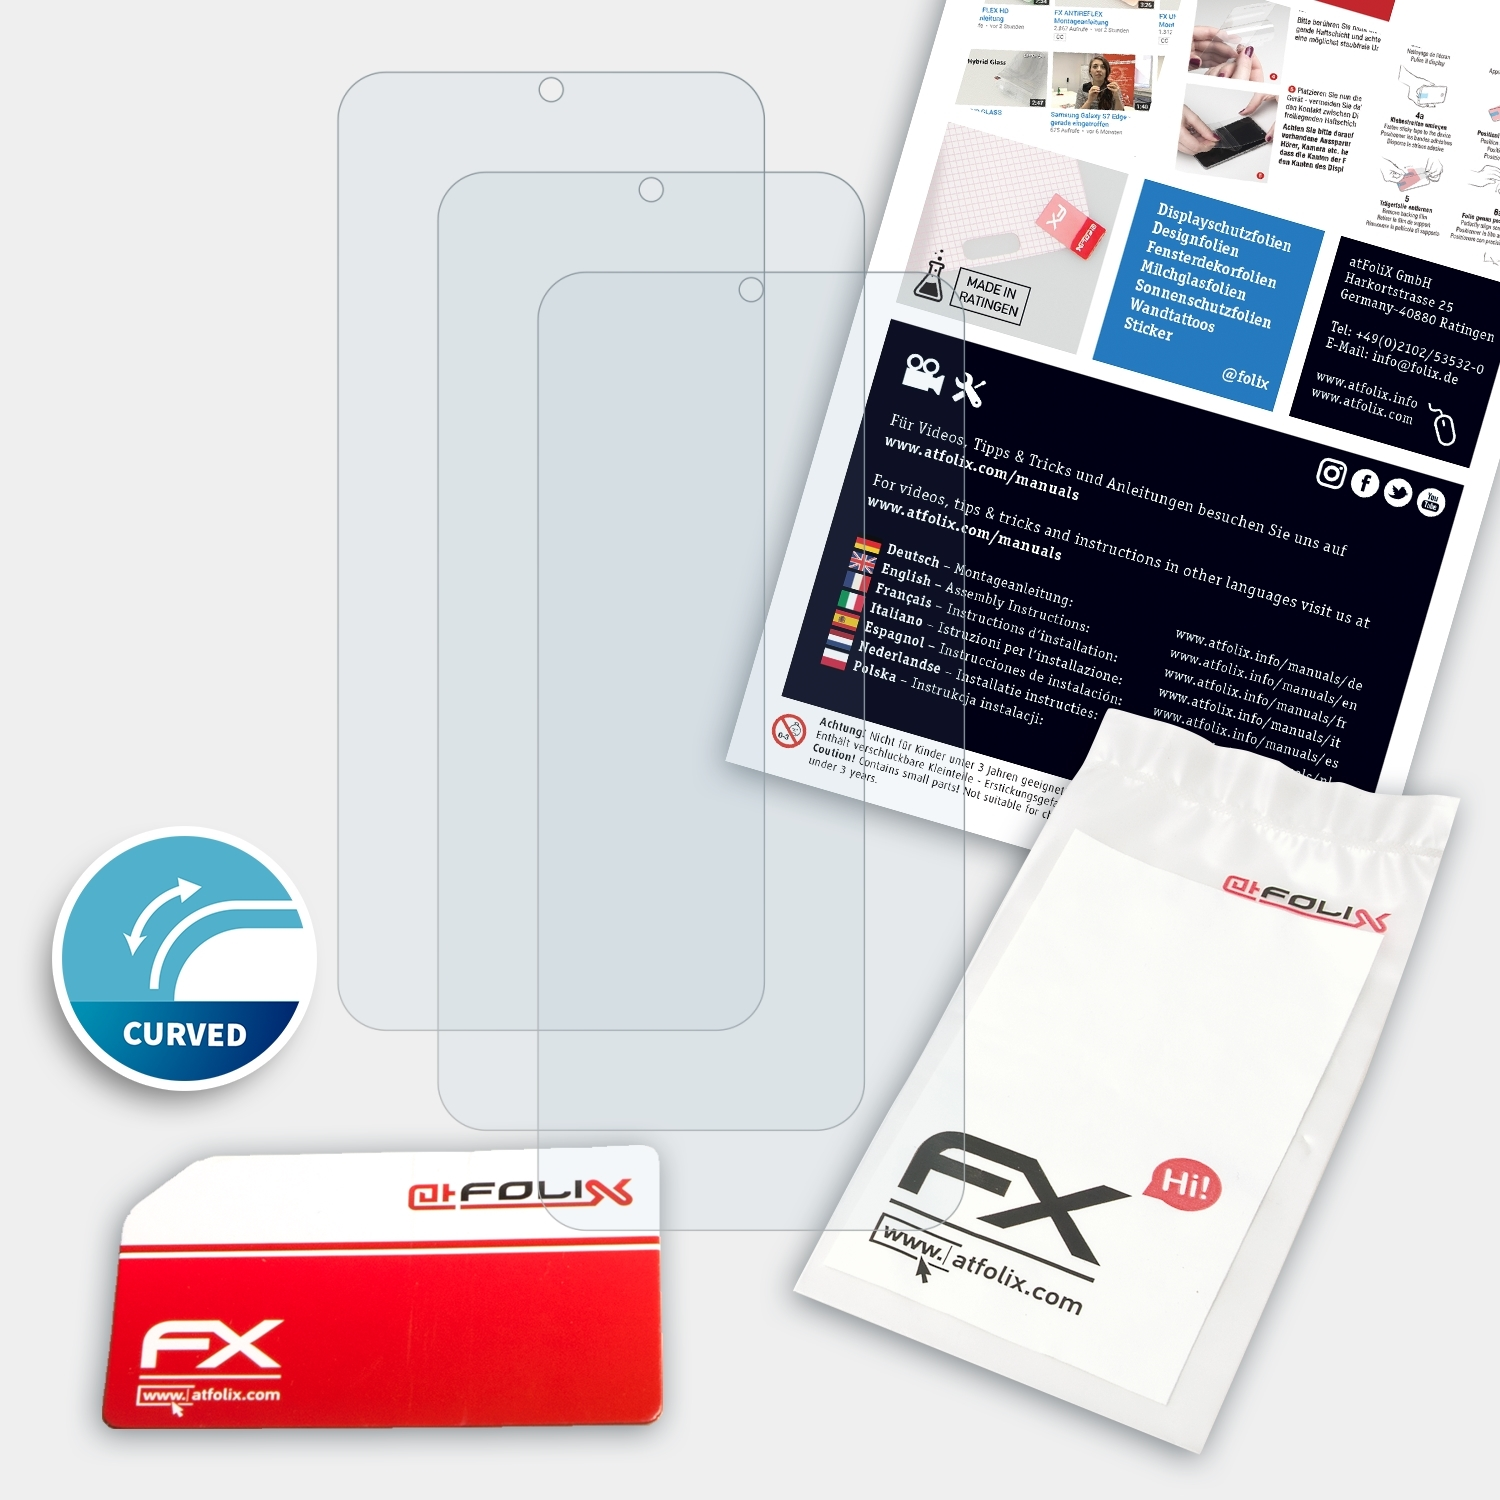 ATFOLIX 3x FX-ActiFleX Displayschutz(für (2021)) Y21 Vivo